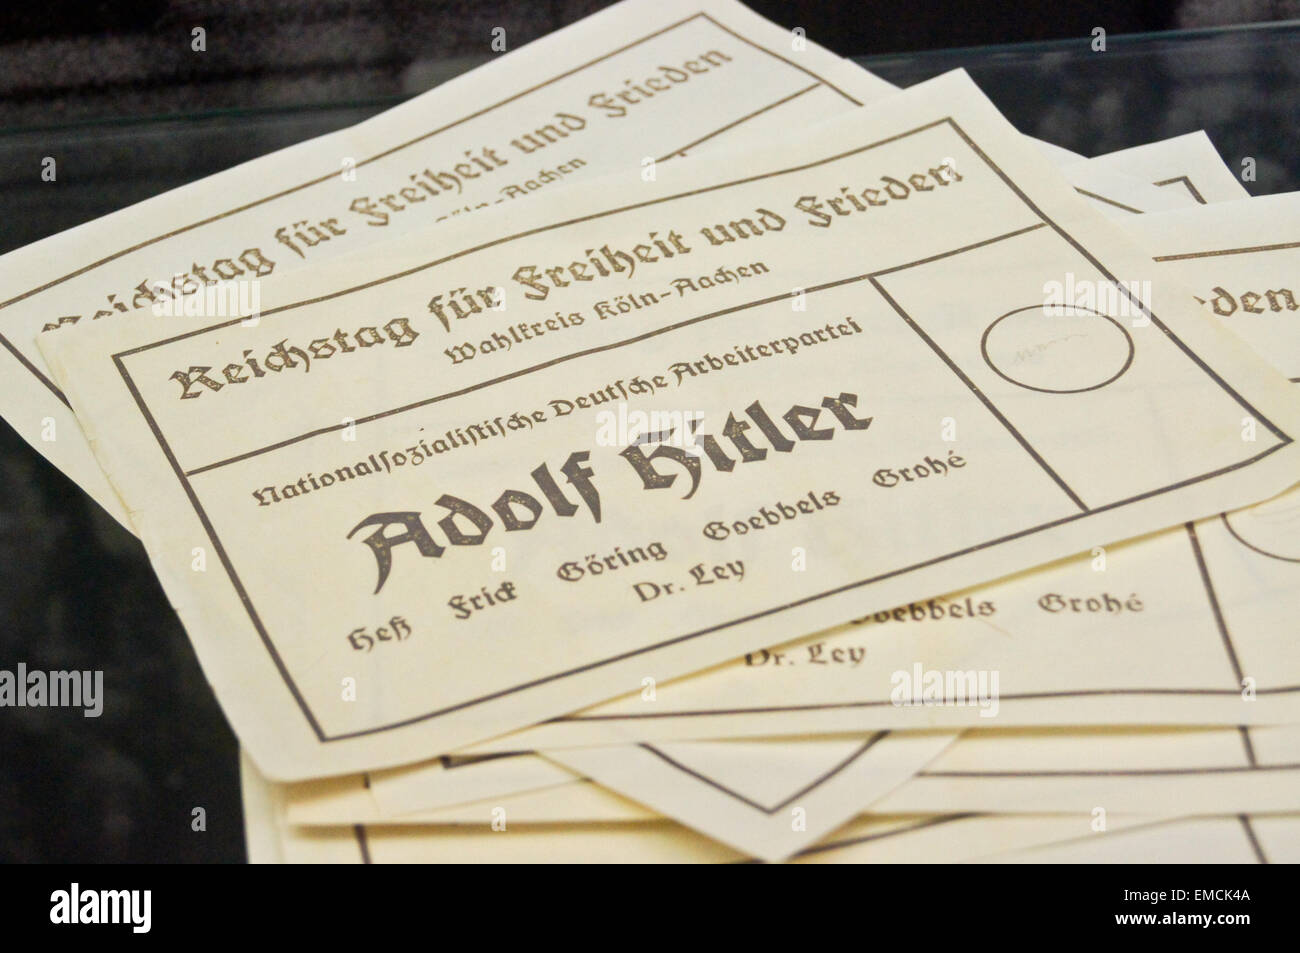 Un bulletin de vote pour le Reichstag avec Adolf Hitler en tant que seul candidat, 1933, Stadtmuseum, Koln, Nordrhein-Westfalen, Allemagne Banque D'Images